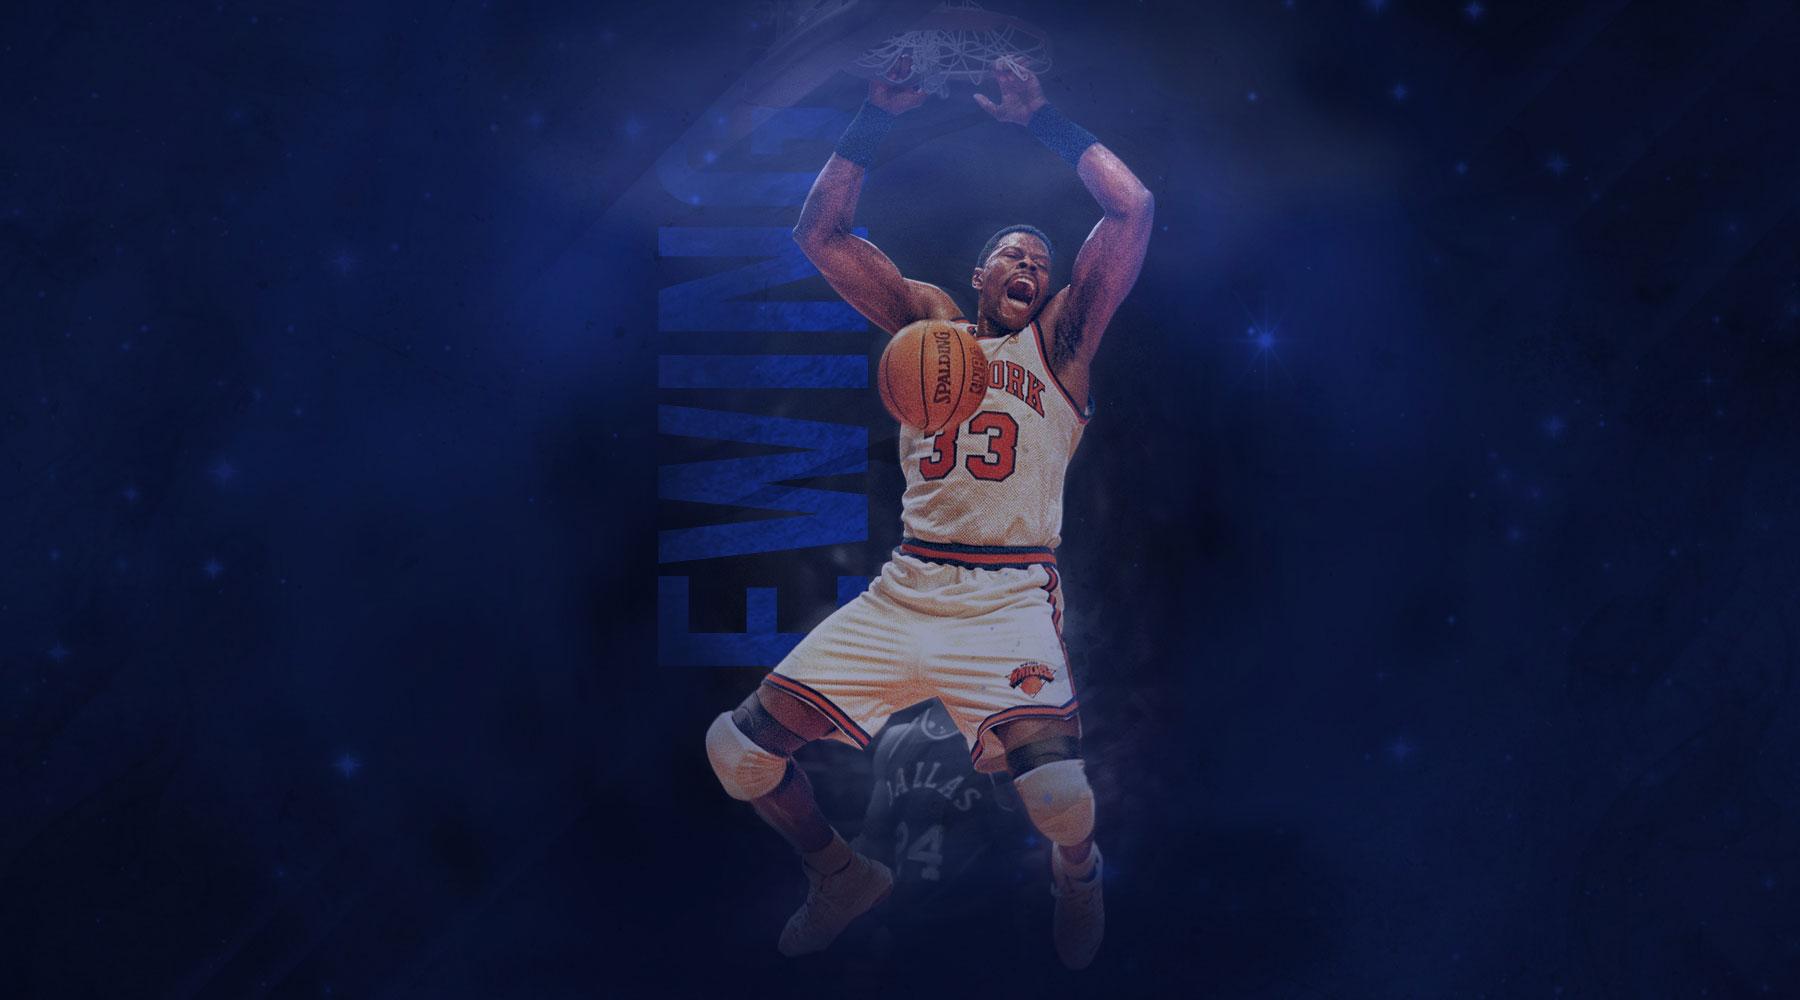 Patrick Ewing 1800×1000 Wallpaper. Basketball Wallpaper at